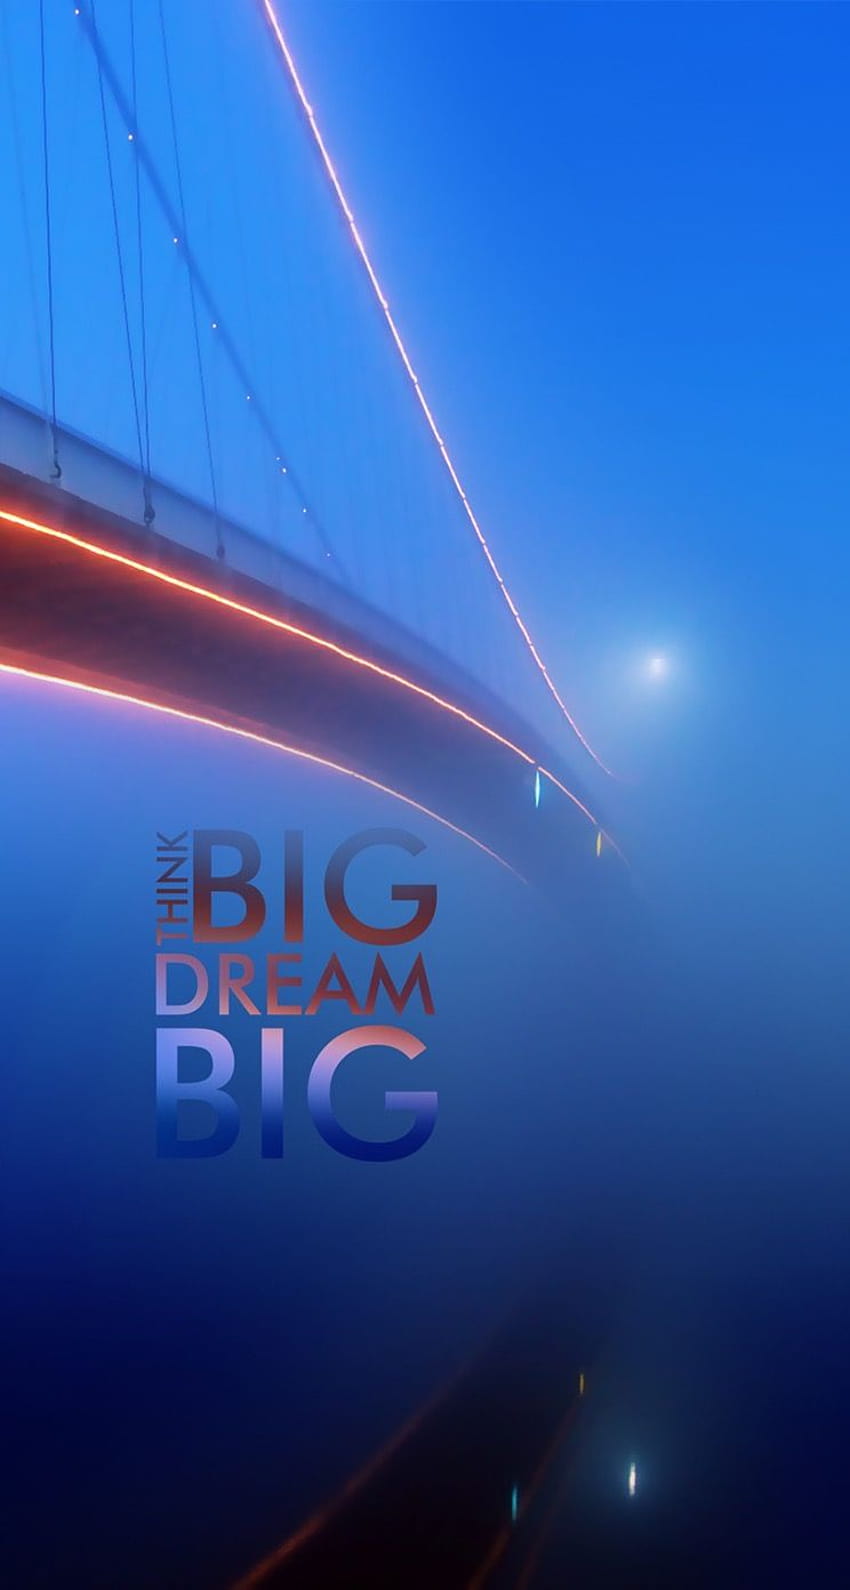 タップしてアプリをゲット！ City Blue Bridge Mist Shining Bright Think Big Dream iPhone 5 HD電話の壁紙